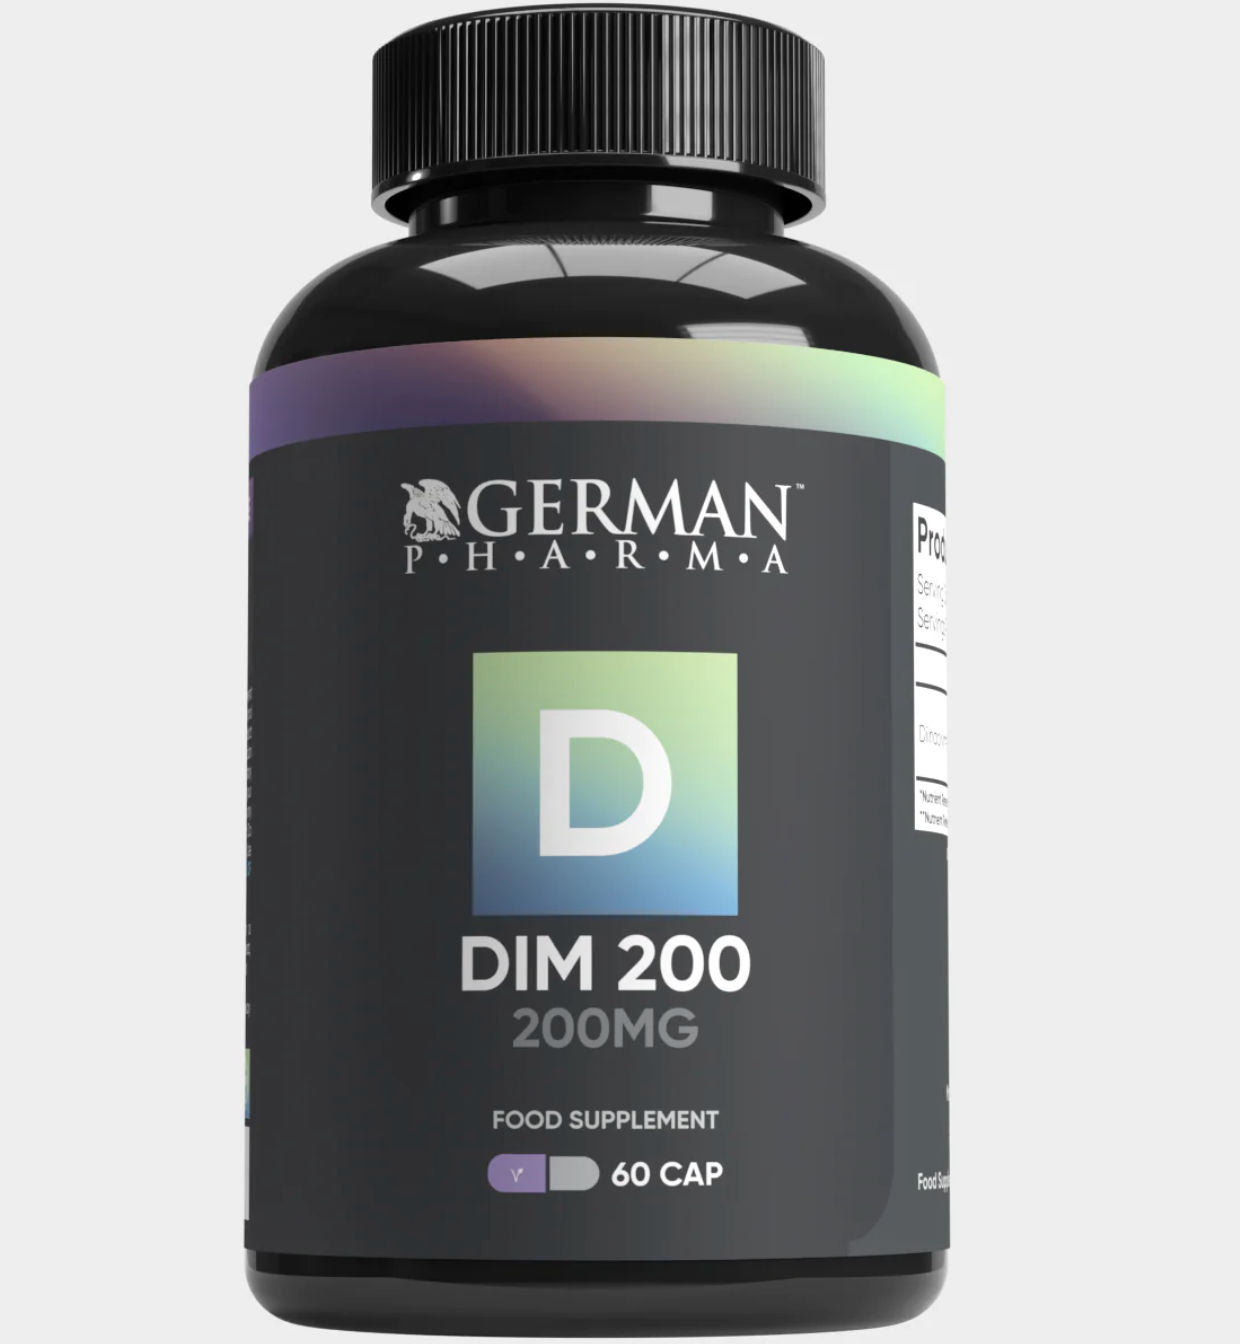 German Pharma DIM 200